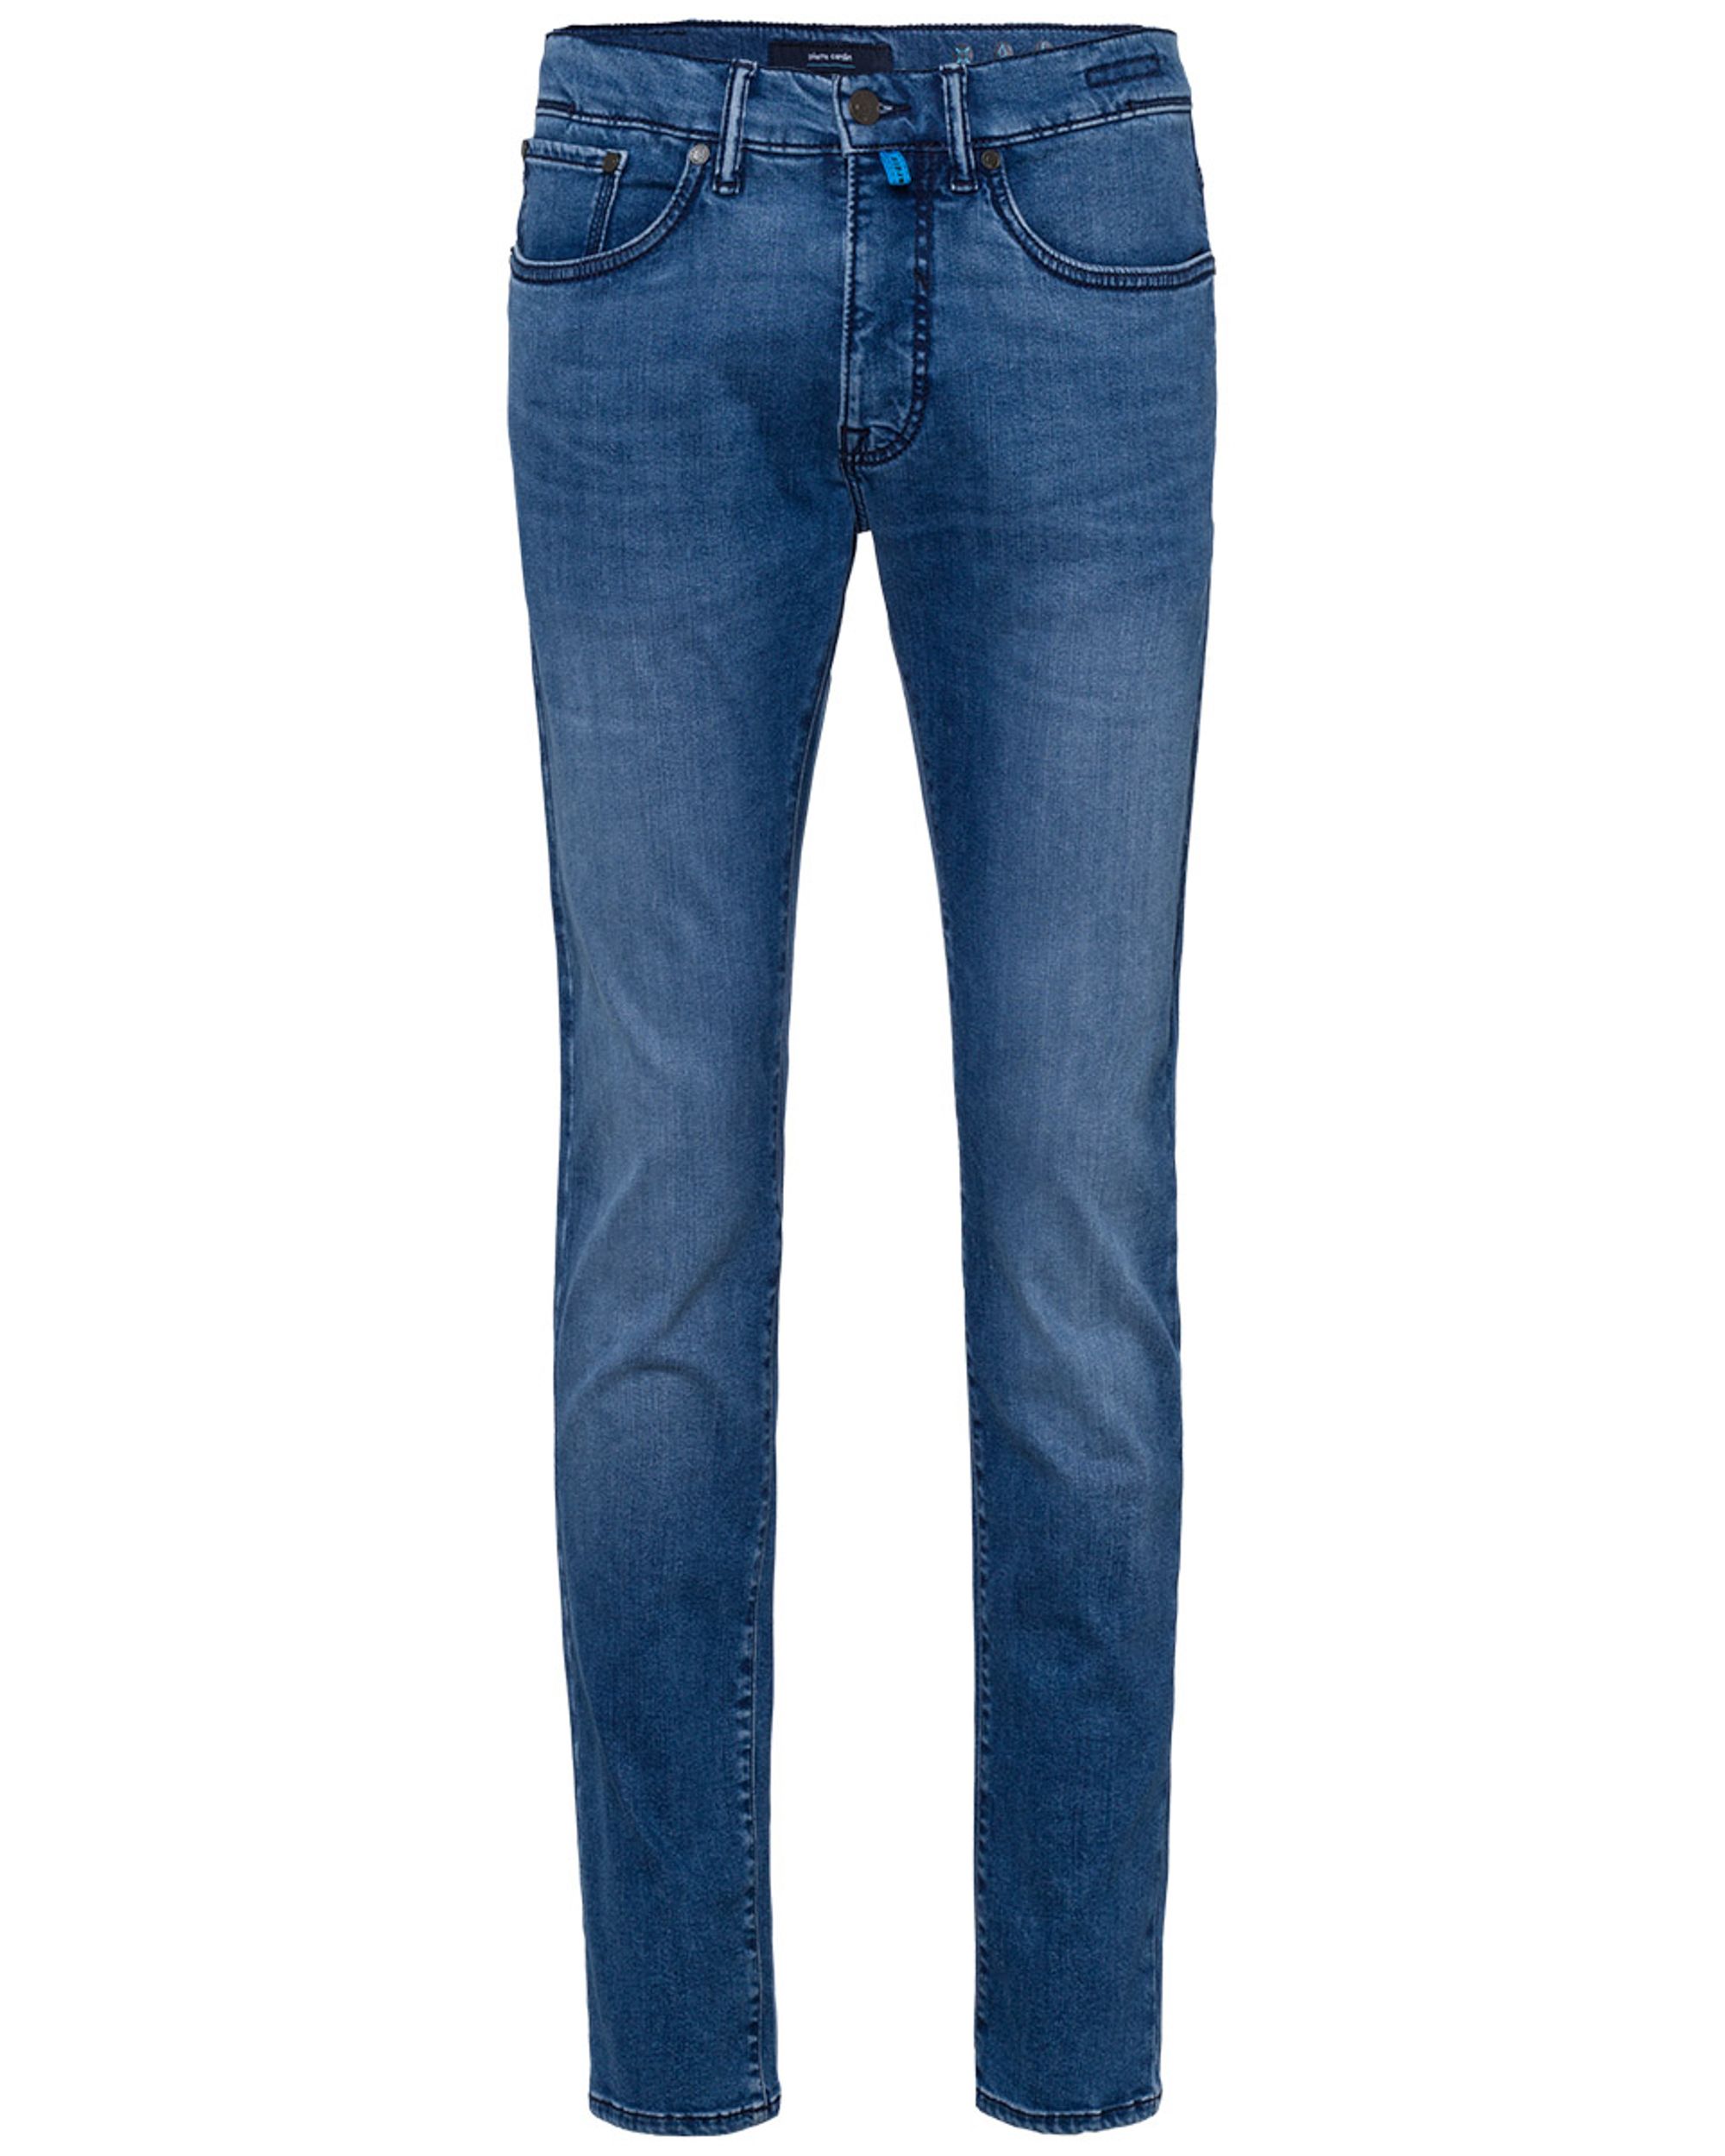 Pierre Cardin Jeans Donker blauw 082057-001-30/30